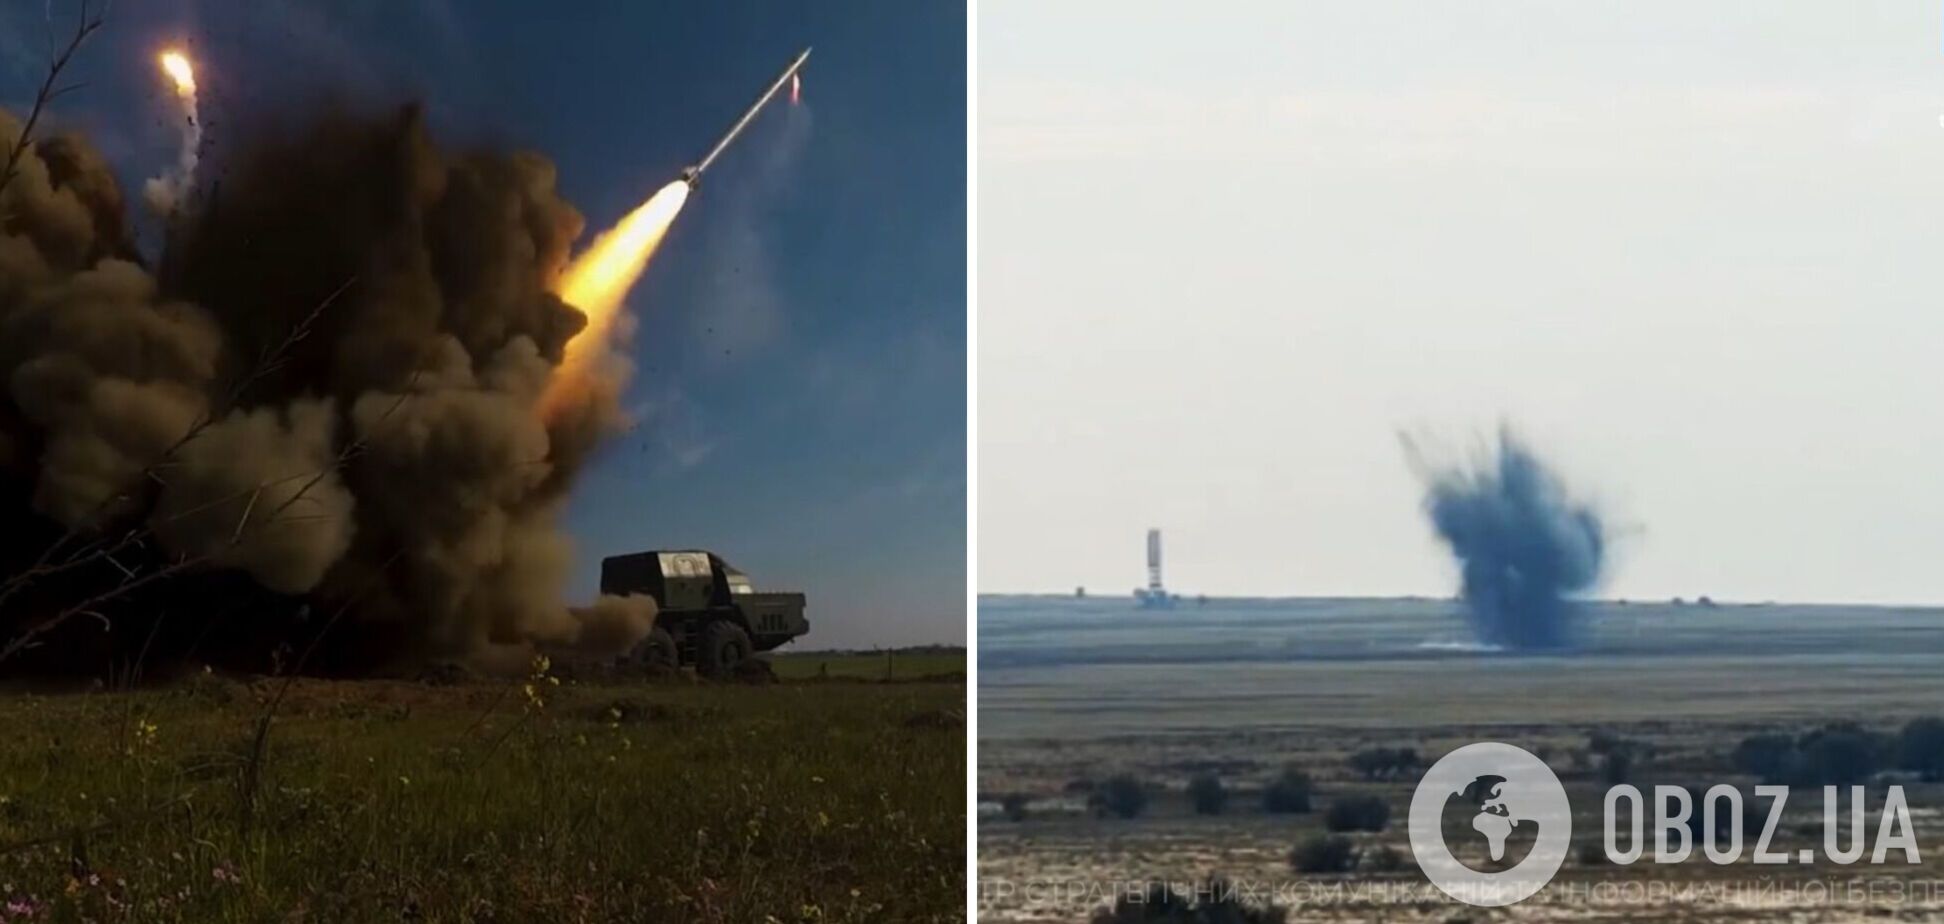 'Оружие победы': как украинская 'Ольха-М' помогает ВСУ уничтожать захватчиков и какую роль может сыграть в контрнаступлении. Видео